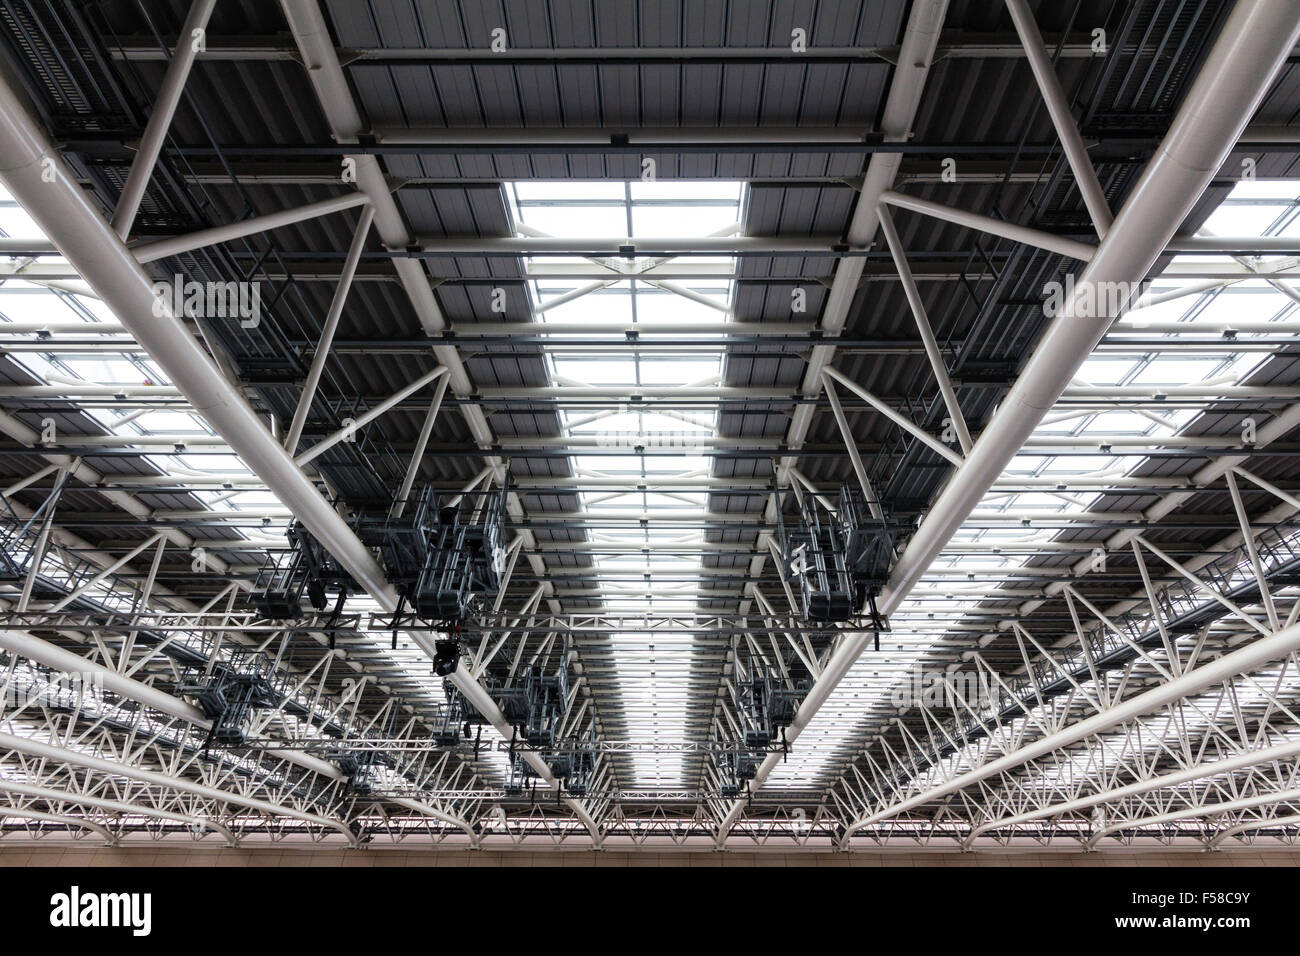 Intérieur de la gare d'Osaka City, montrant des détails de toiture avec poutres apparentes du tube métallique soutenant le toit en verre de la structure métallique. Banque D'Images